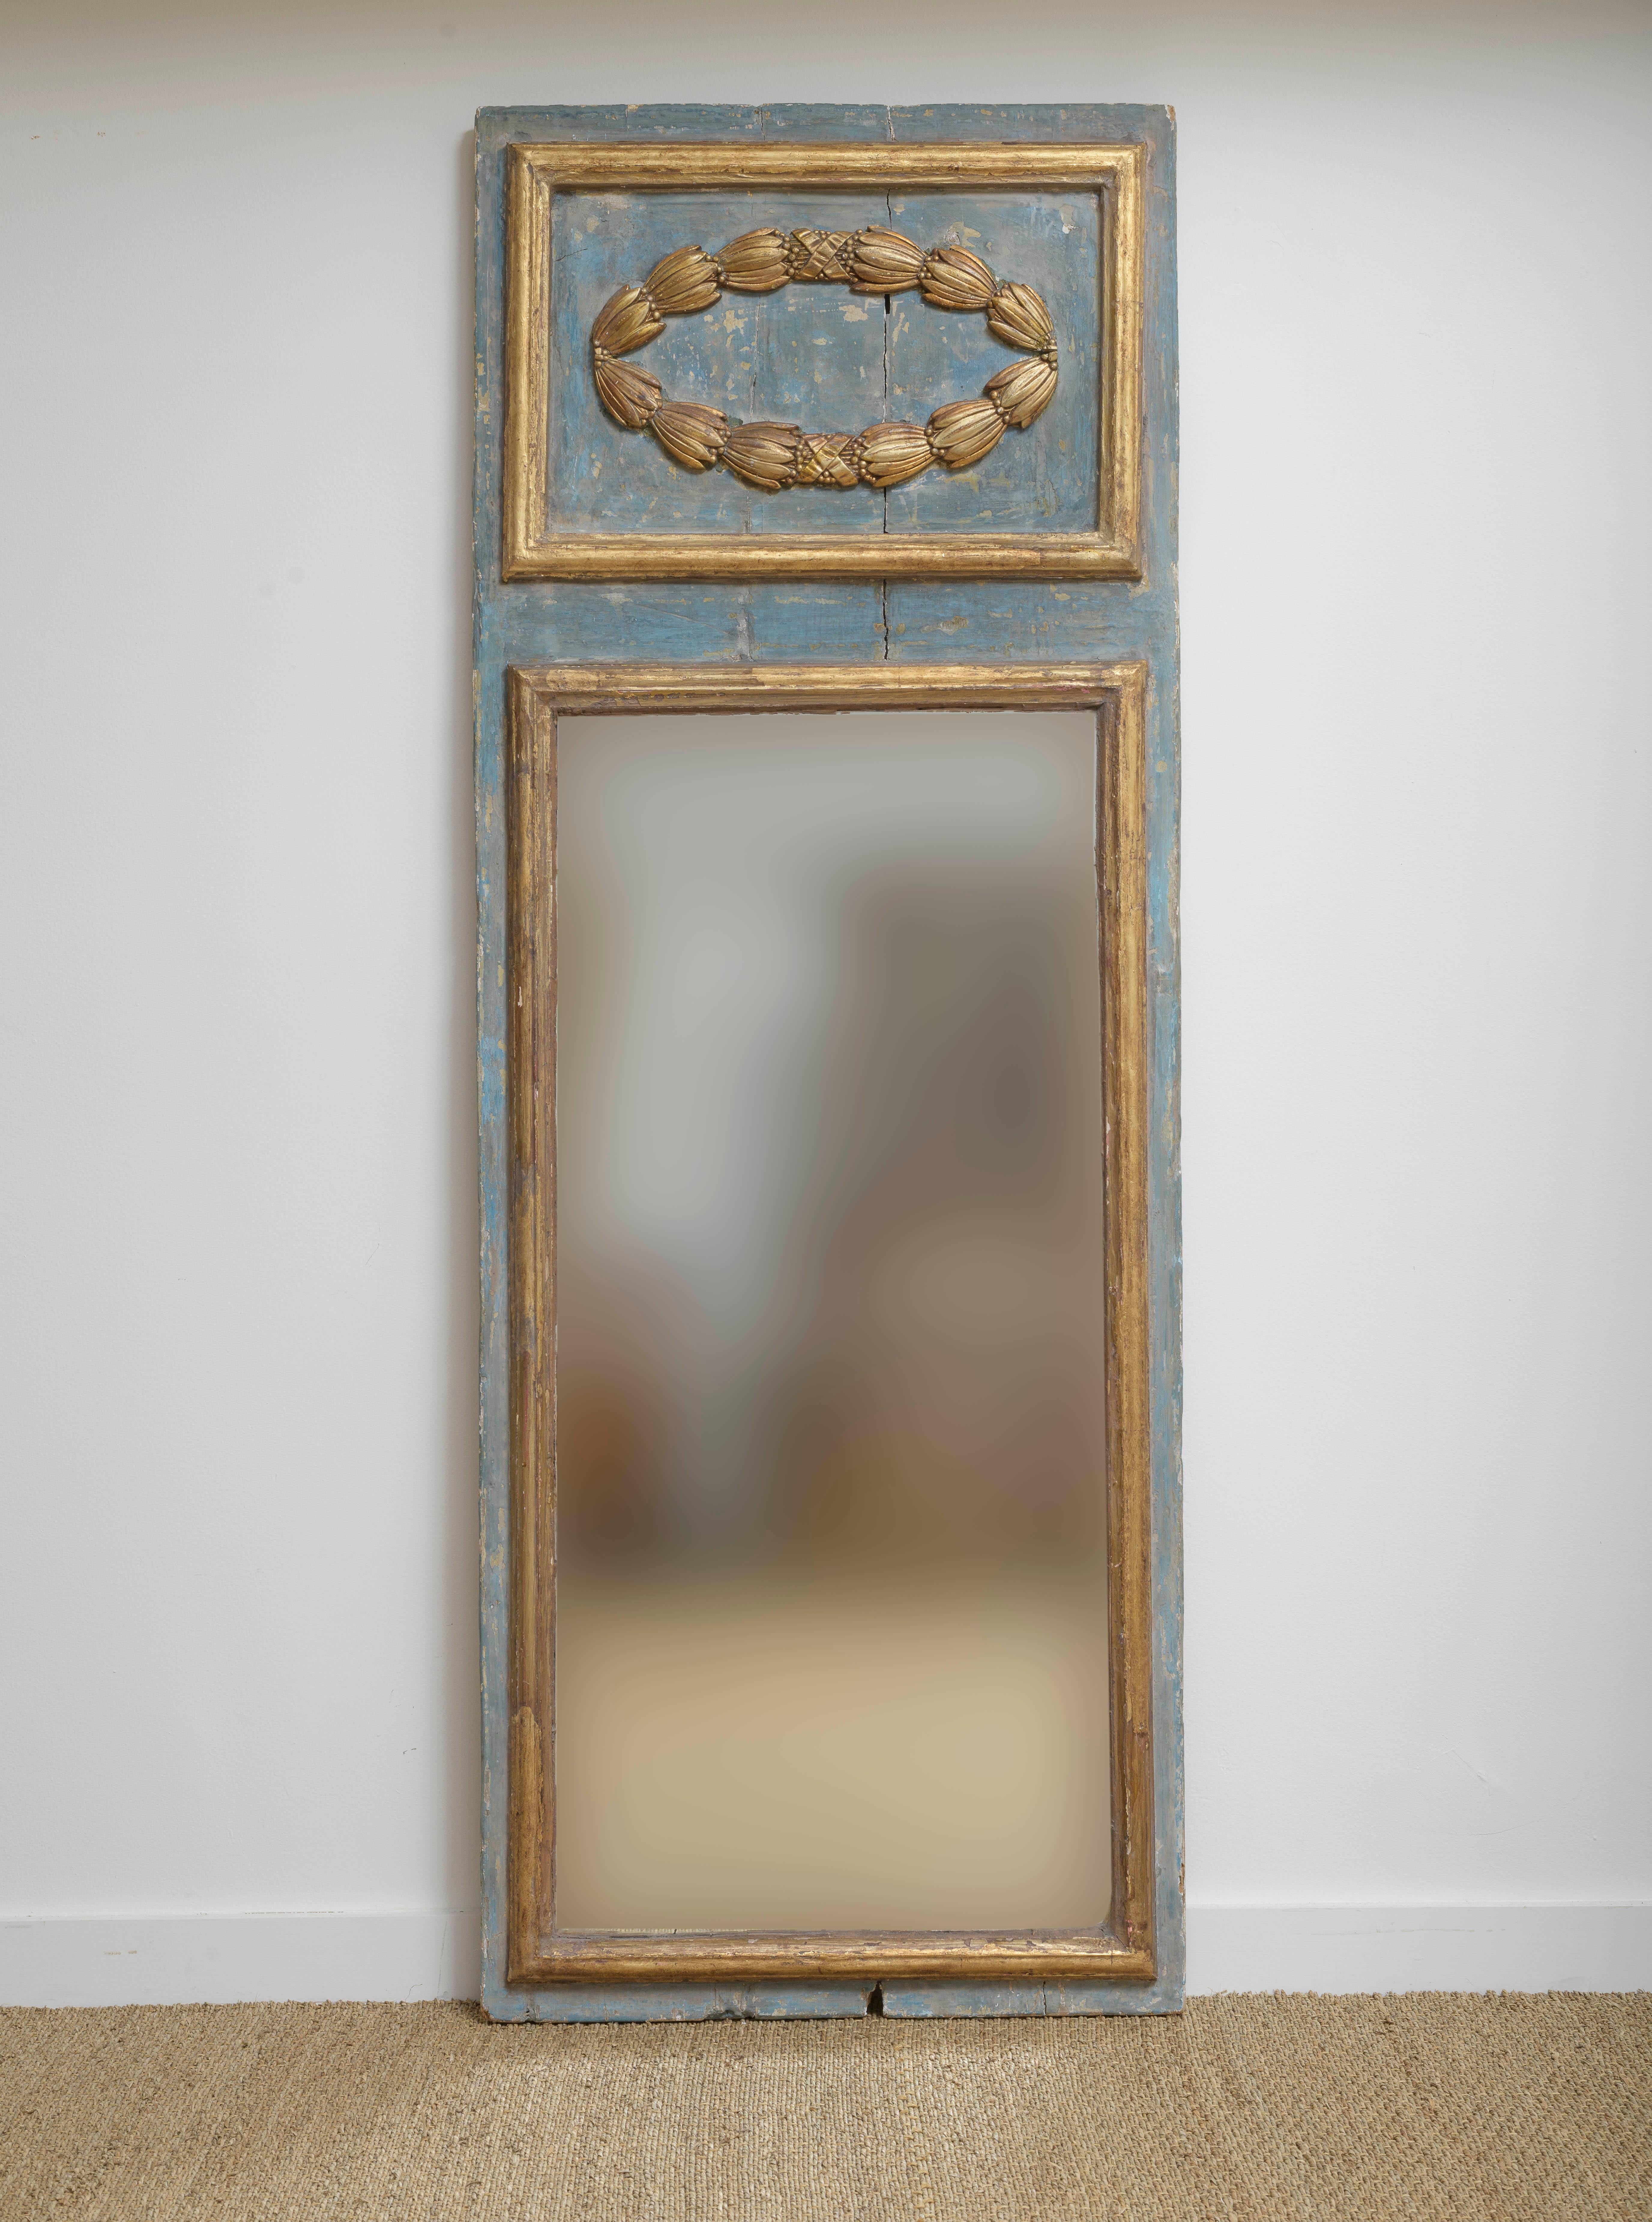 Italienischer Trumeau-Spiegel im Louis-LXI-Stil des 19. Jahrhunderts, Original-Quecksilberglas.
Original blaue und graue Farbe und Vergoldung.  Original Quecksilberglas  Einzigartig in drei Teilen mit horizontaler Fase ausgeführt.   